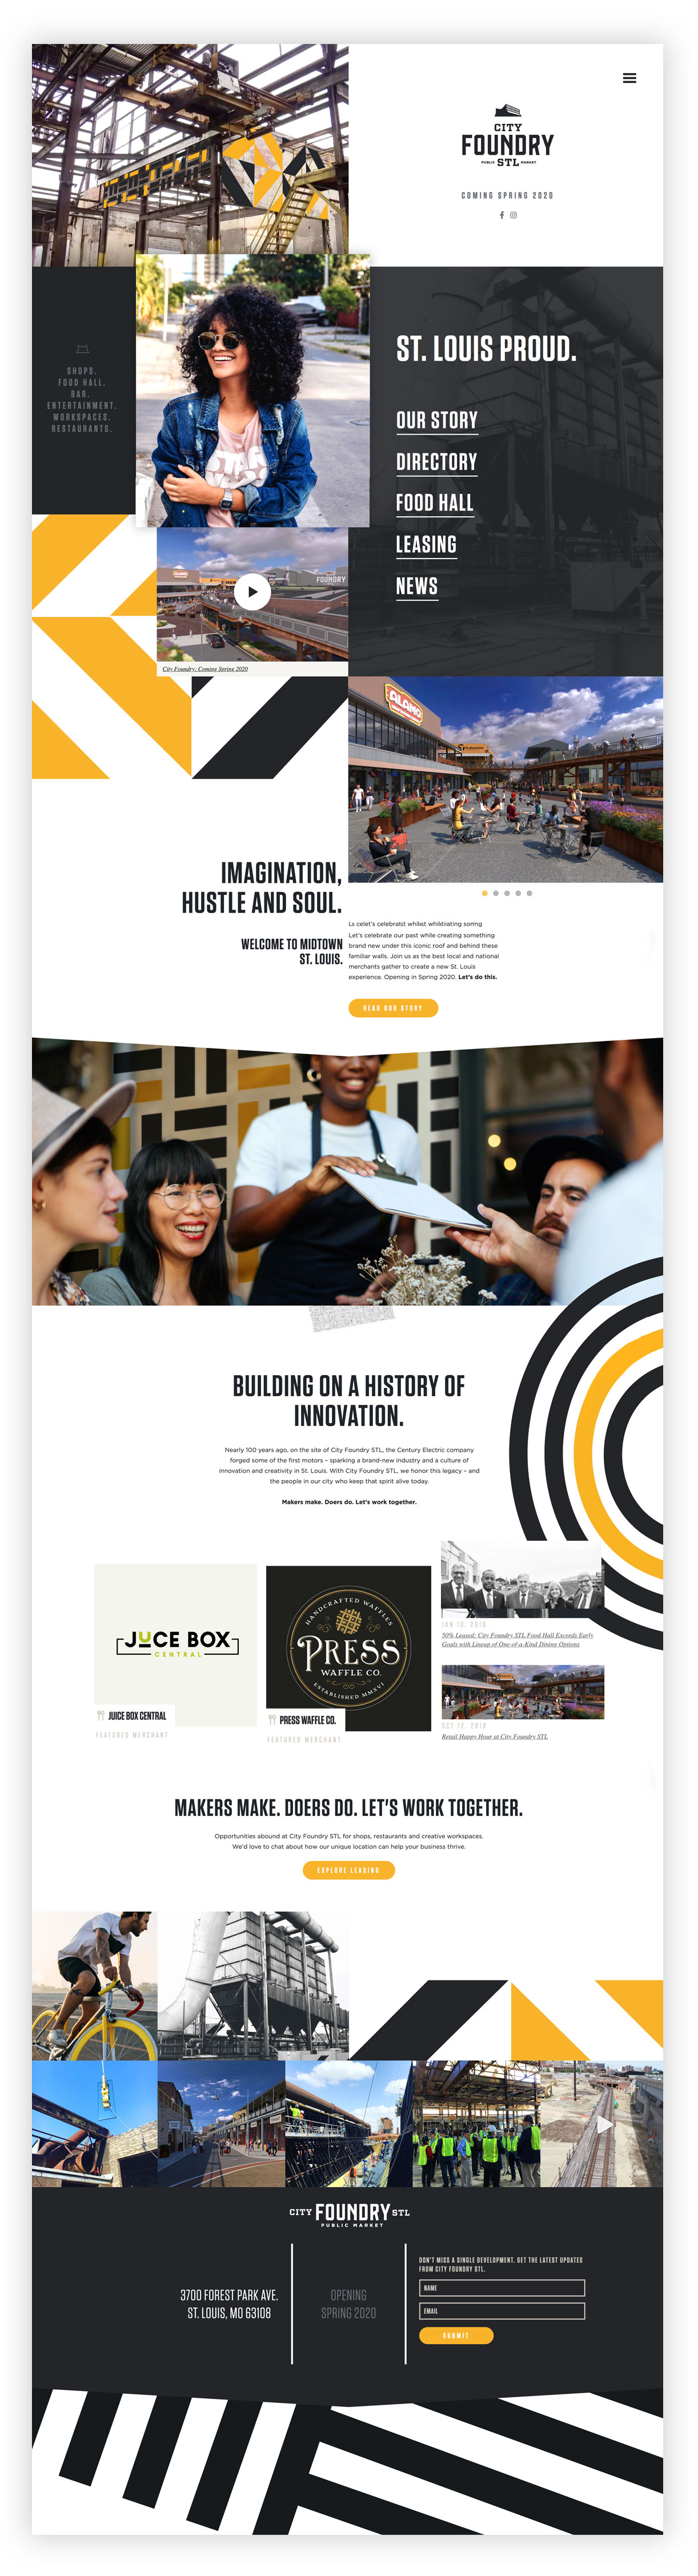 City Foundry website design